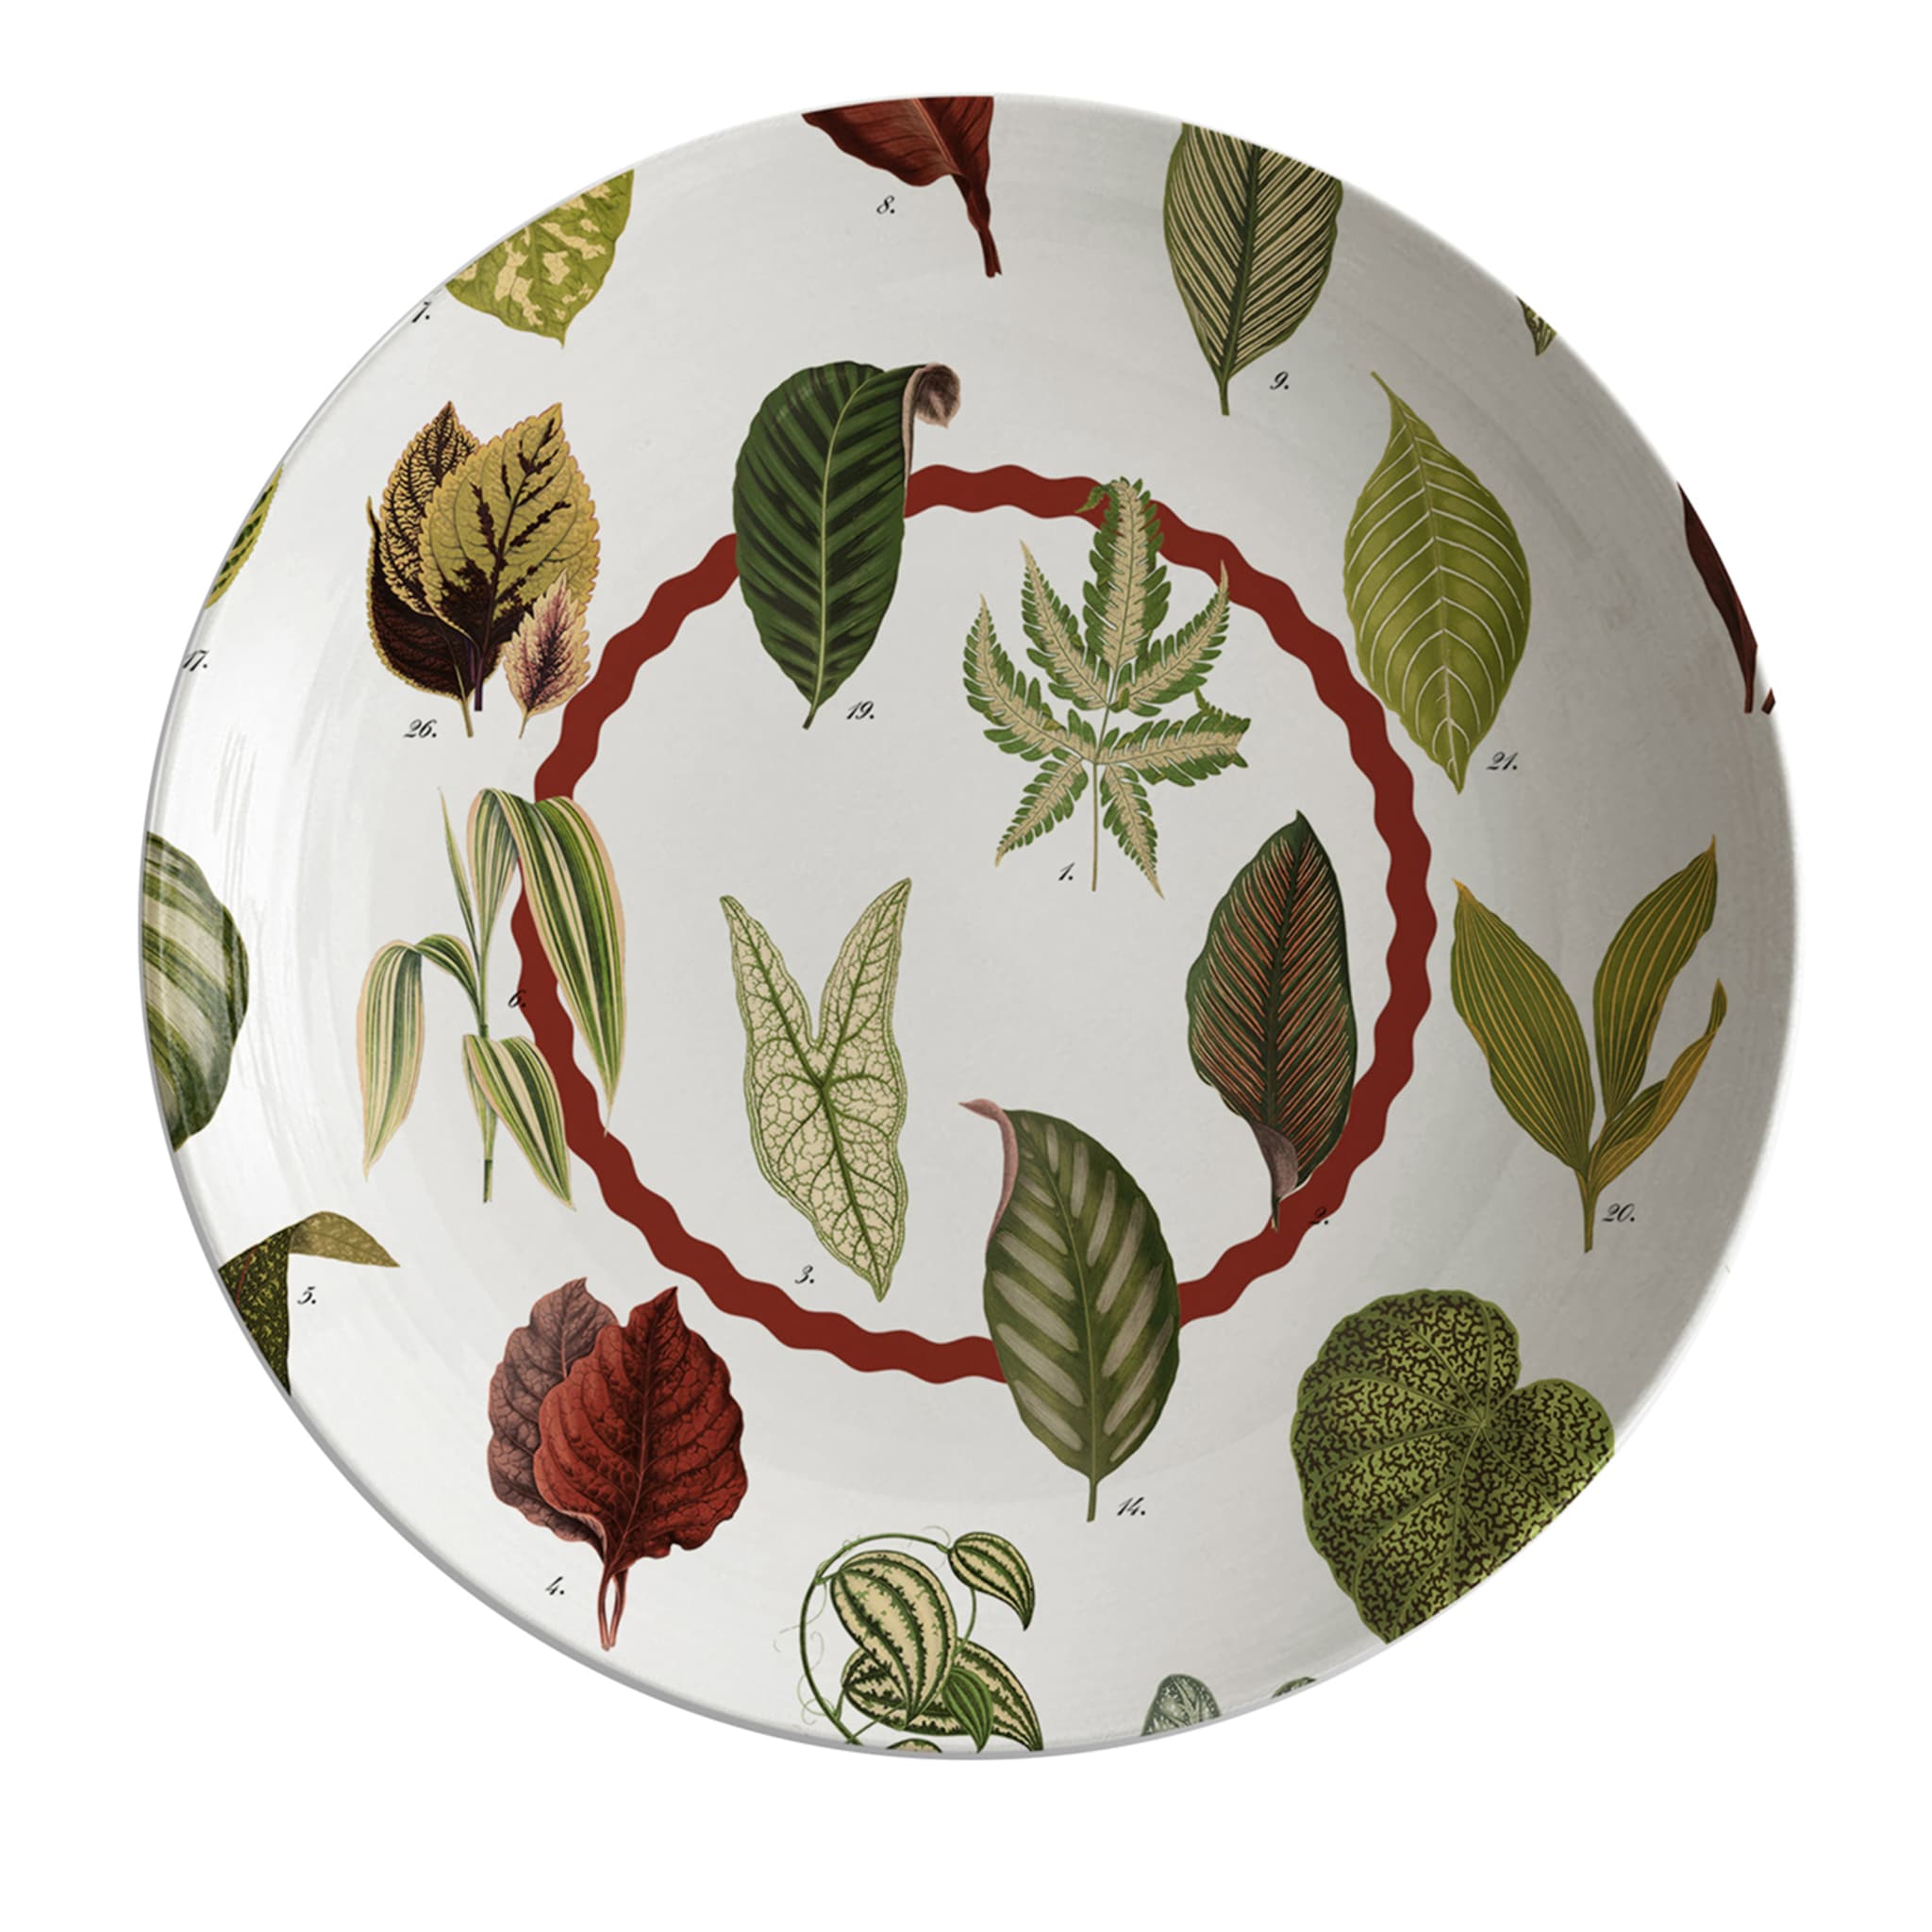 Cabinet De Curiosités Porcelain Soup Plate With Leaves - Main view